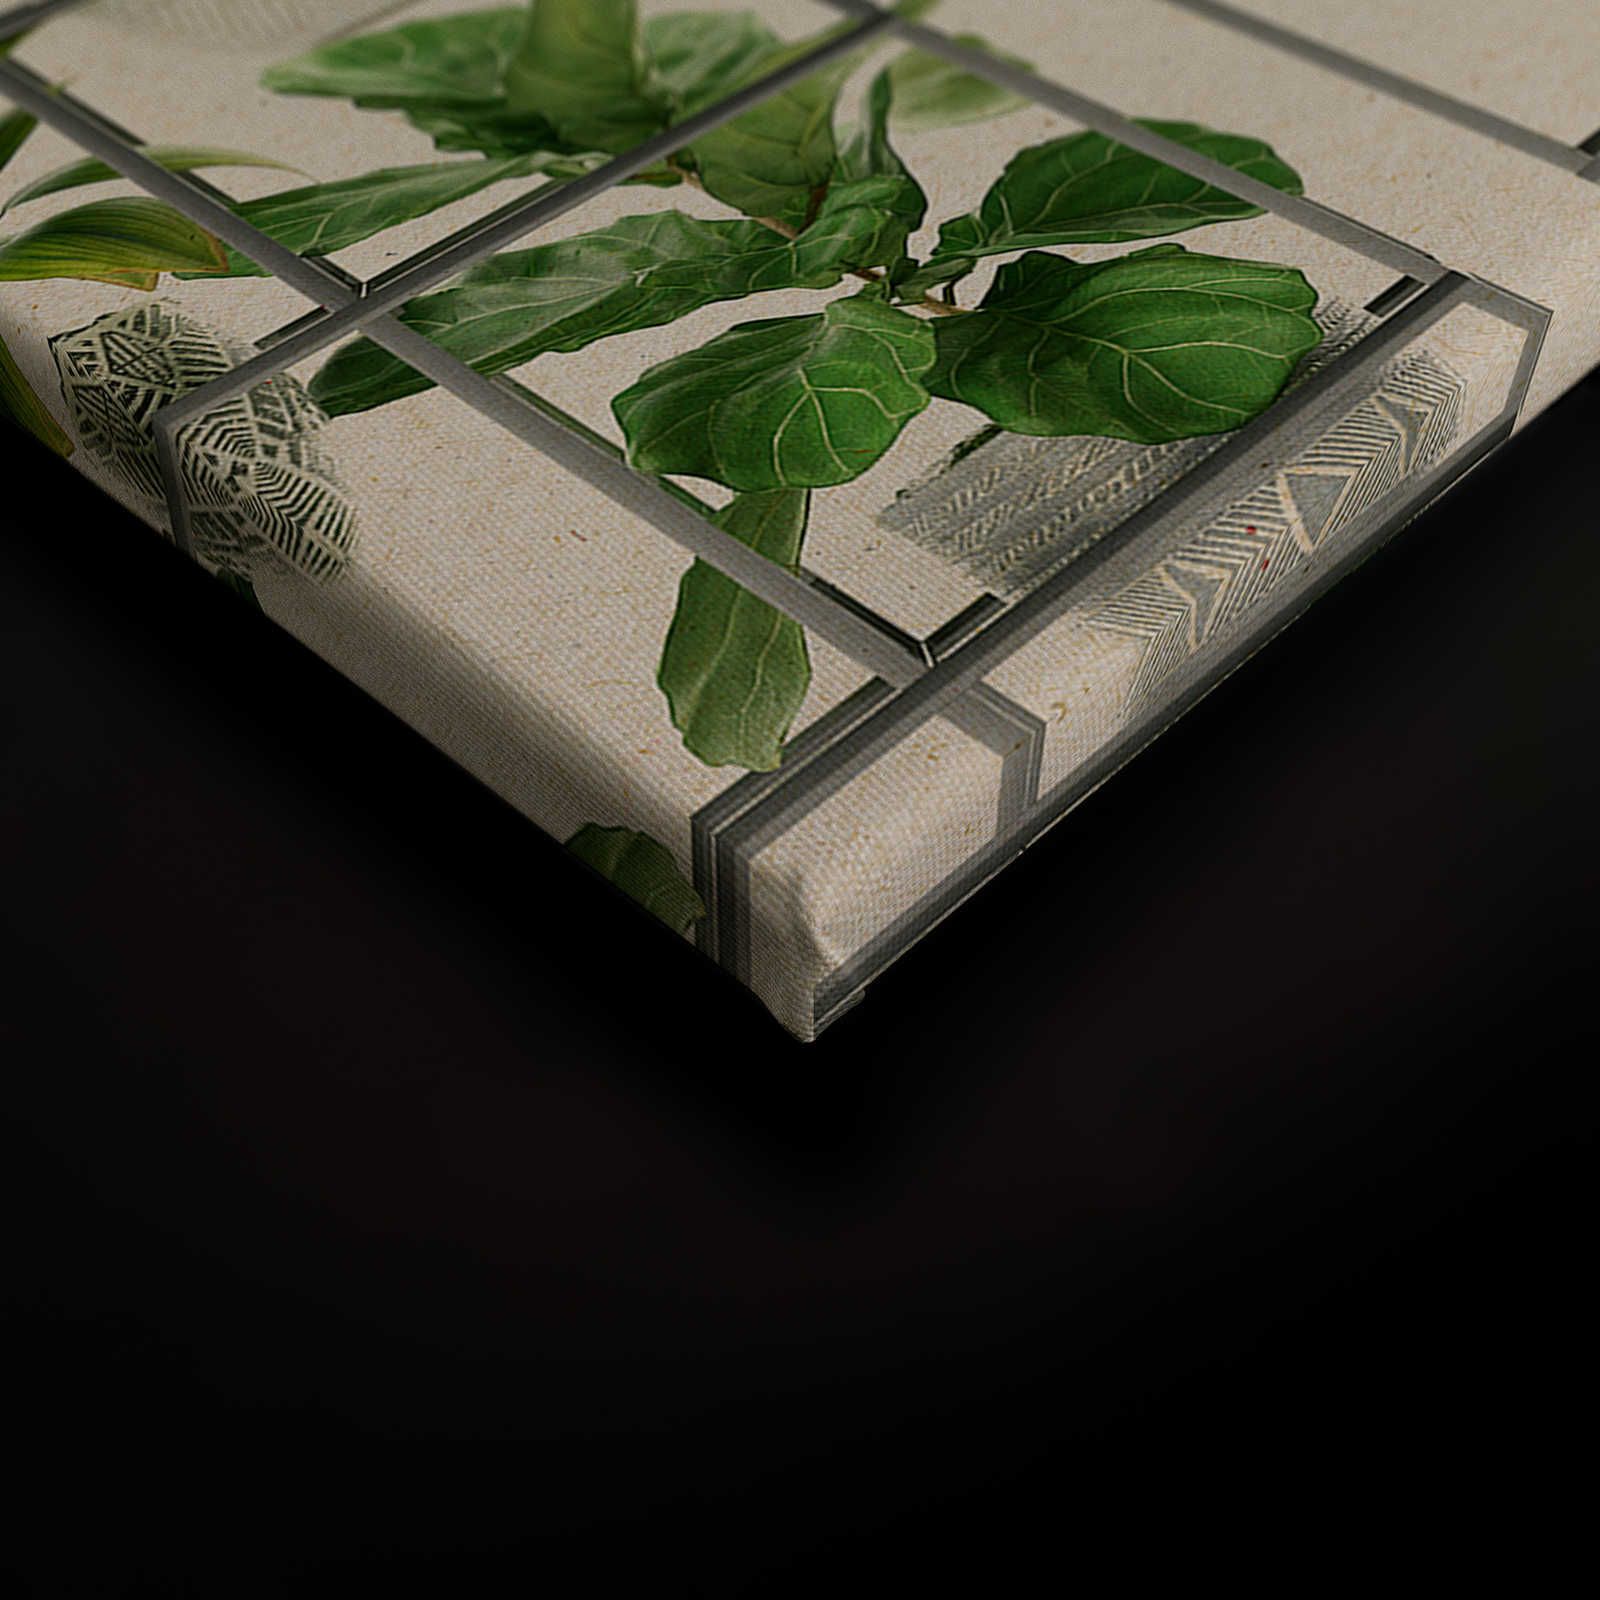             Plant Shop 2 - Tableau de plantes moderne sur toile vert & gris - 0,90 m x 0,60 m
        